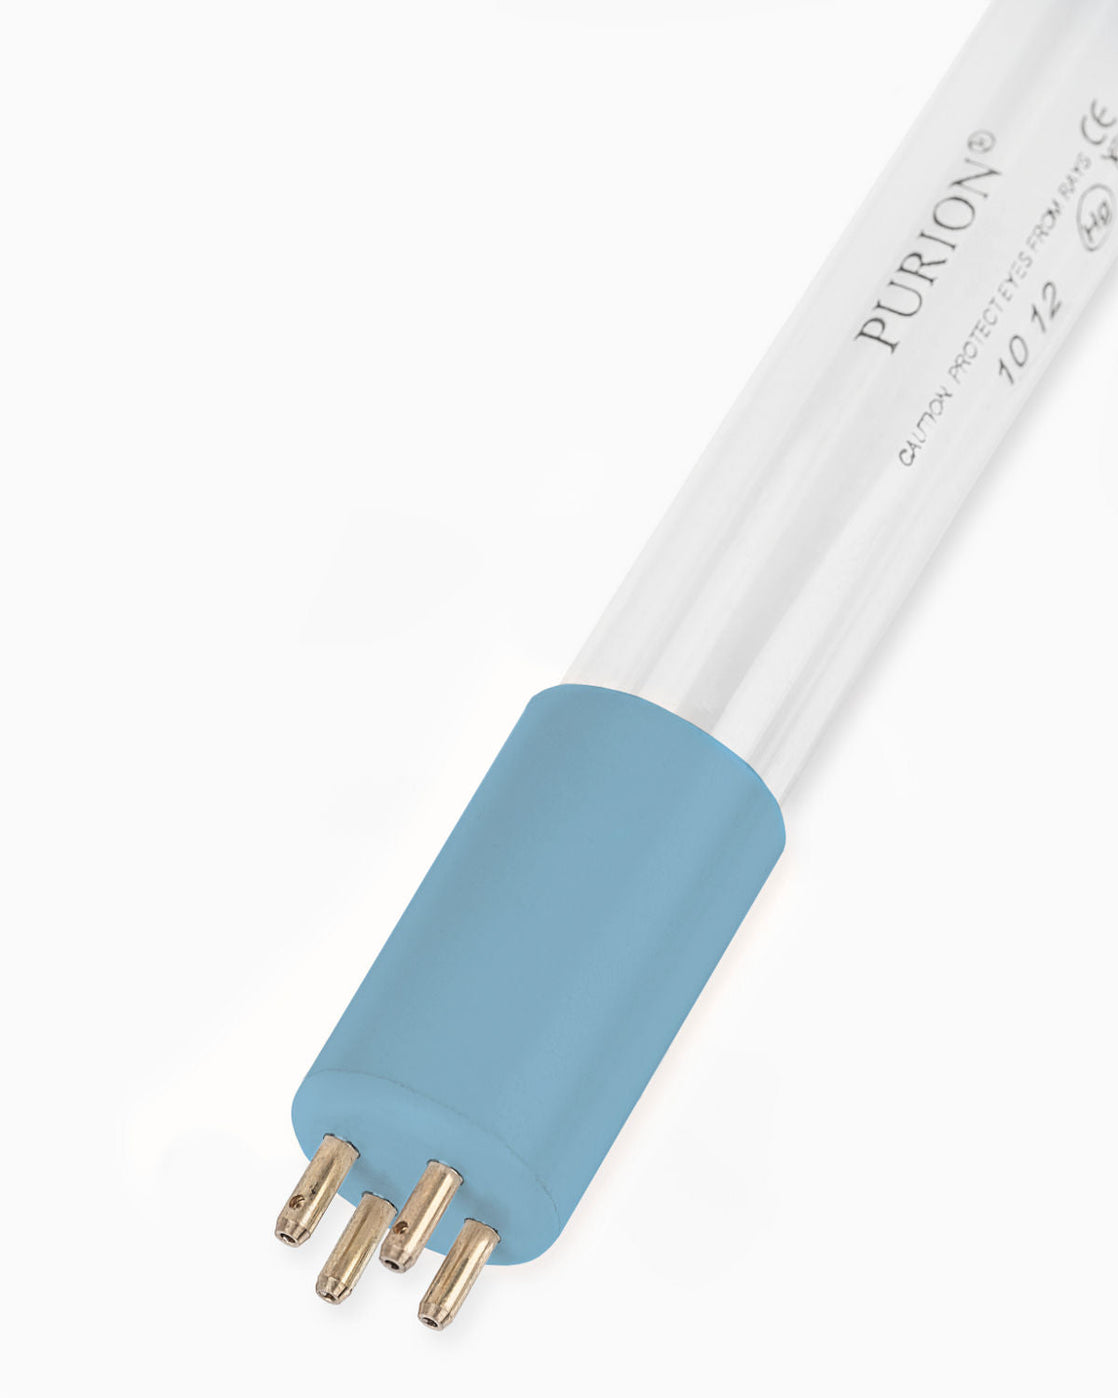 Eine blaue Lichtröhre auf weißem Hintergrund, konzipiert zur Verkeimung und Förderung der Trinkwasserqualität – die PURION IBC DN225 90W SPL BS der UV Concept GmbH.